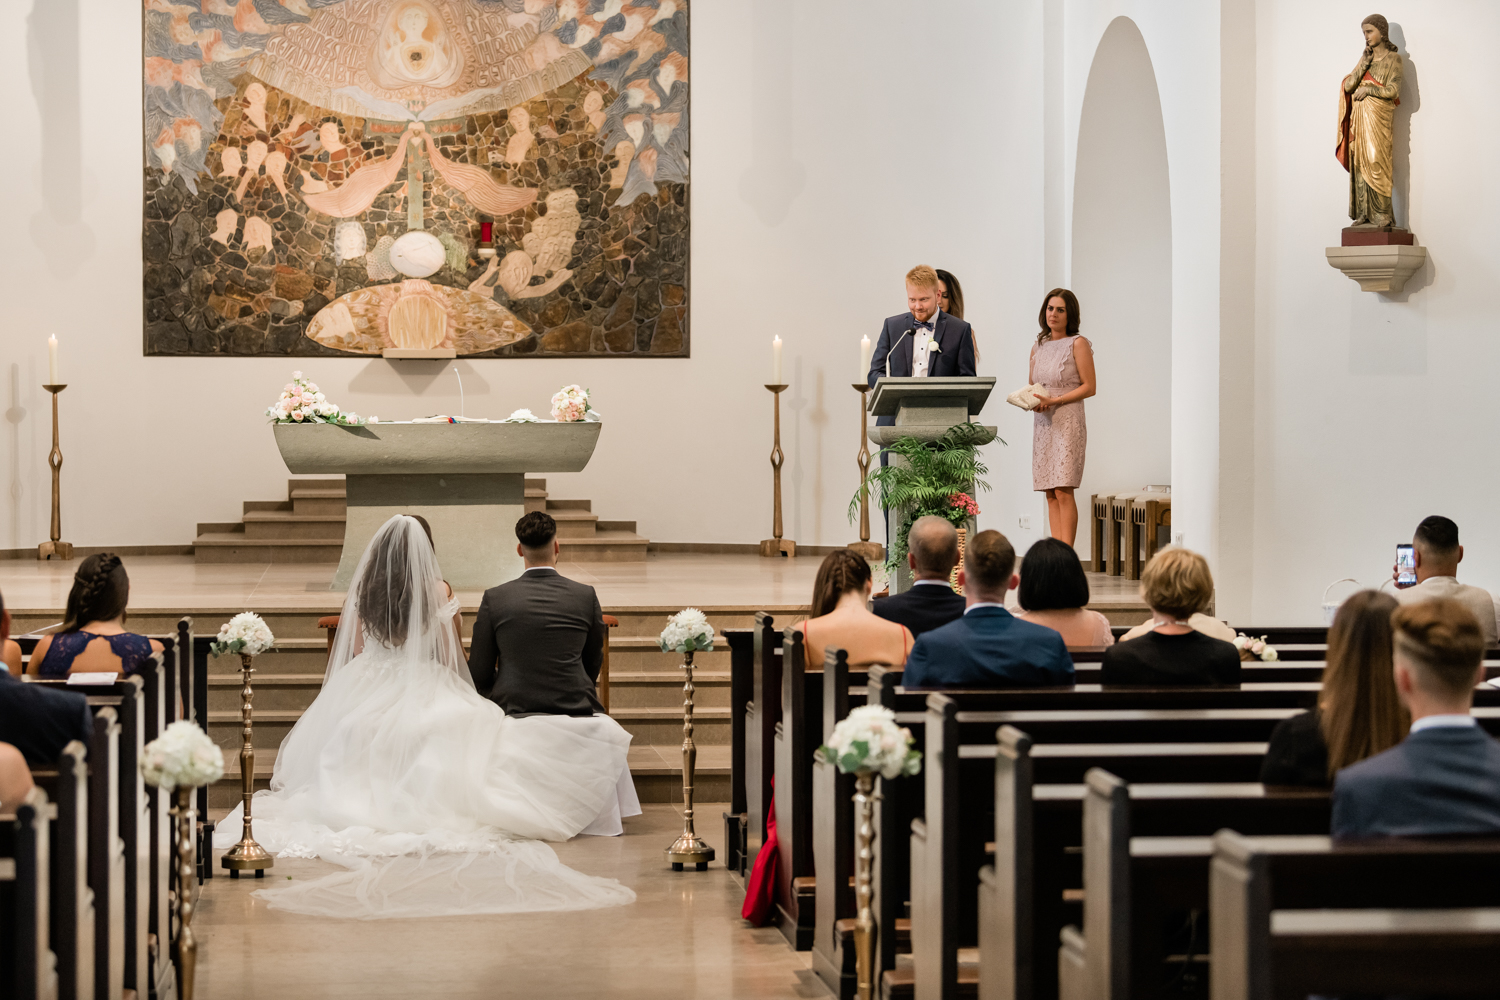 Hochzeitsfotograf Rocha Studio Osnabrück - Hochzeitsreportage und kirchliche Trauung von Laura & Claudio in Osnabrück